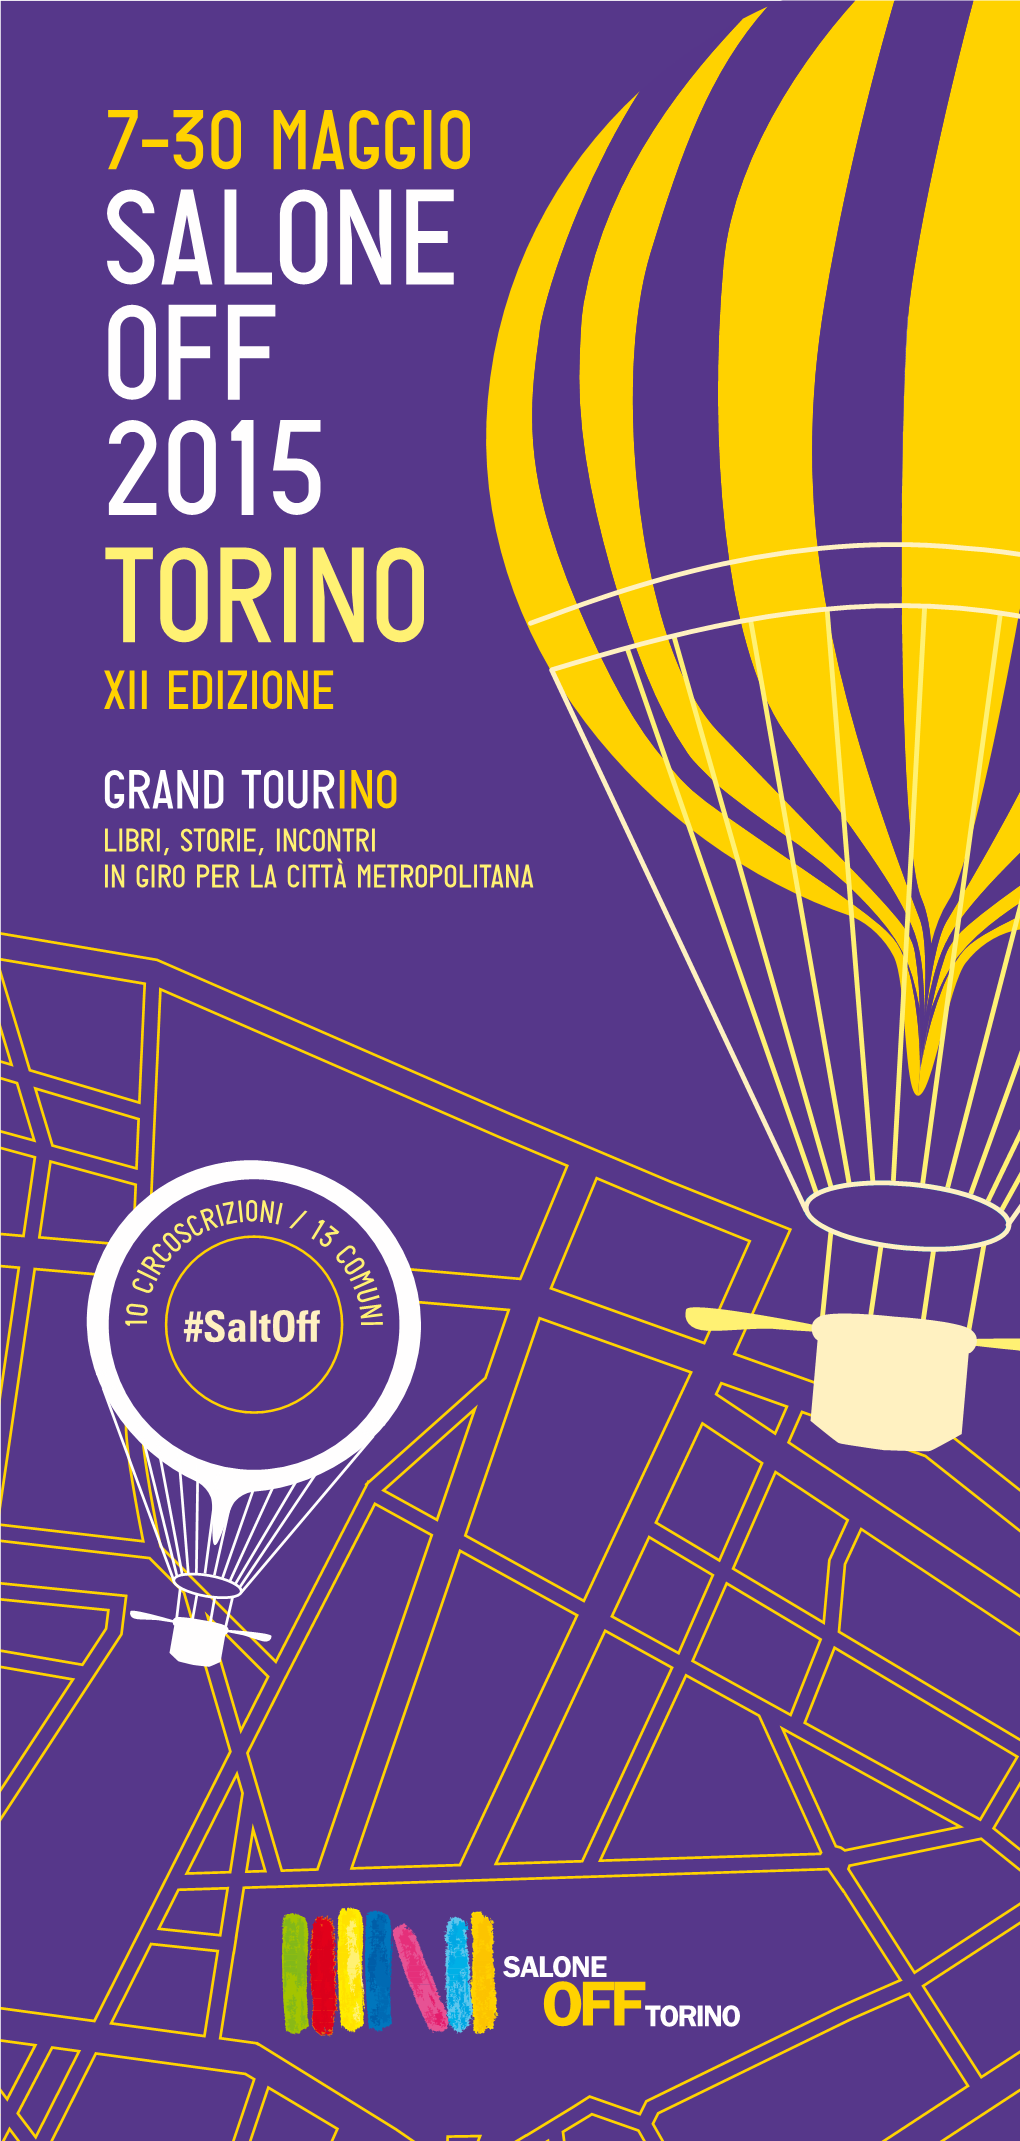 7–30 Maggio SALONE OFF 2015 Torino Xii Edizione Grand Tour Ino LIBRI, STORIE, INCONTRI in GIRO PER LA Città Metropolitana